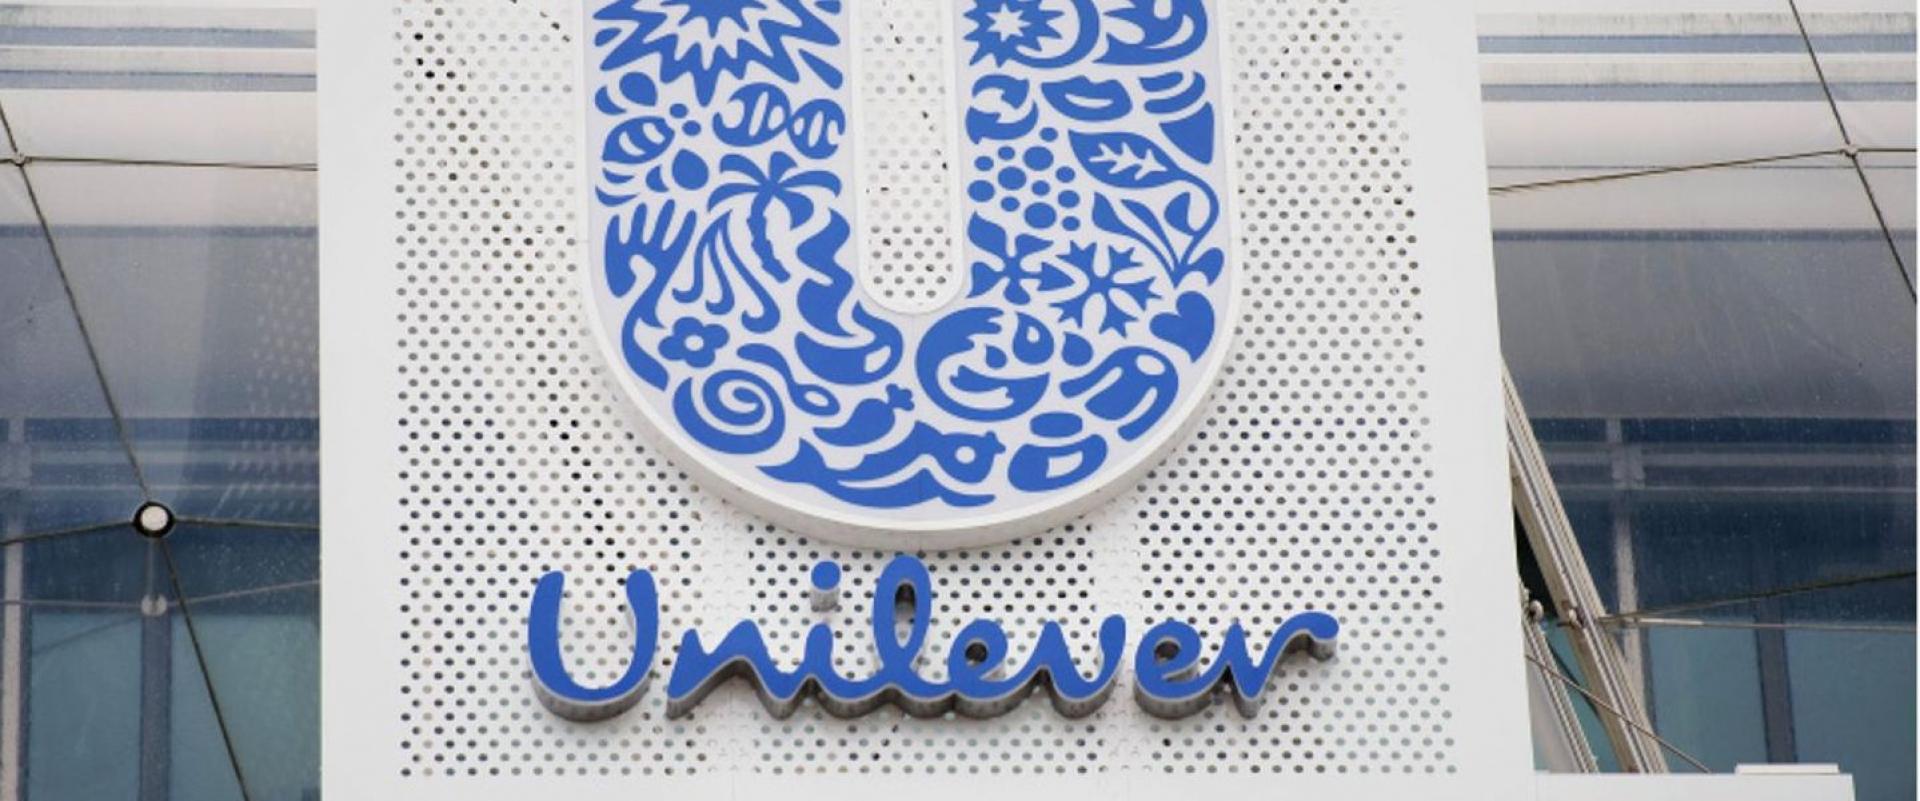 Koncern Unilever sygnalizuje, że będzie kontynuował starania o zakup części biznesu GlaxoSmithKline 